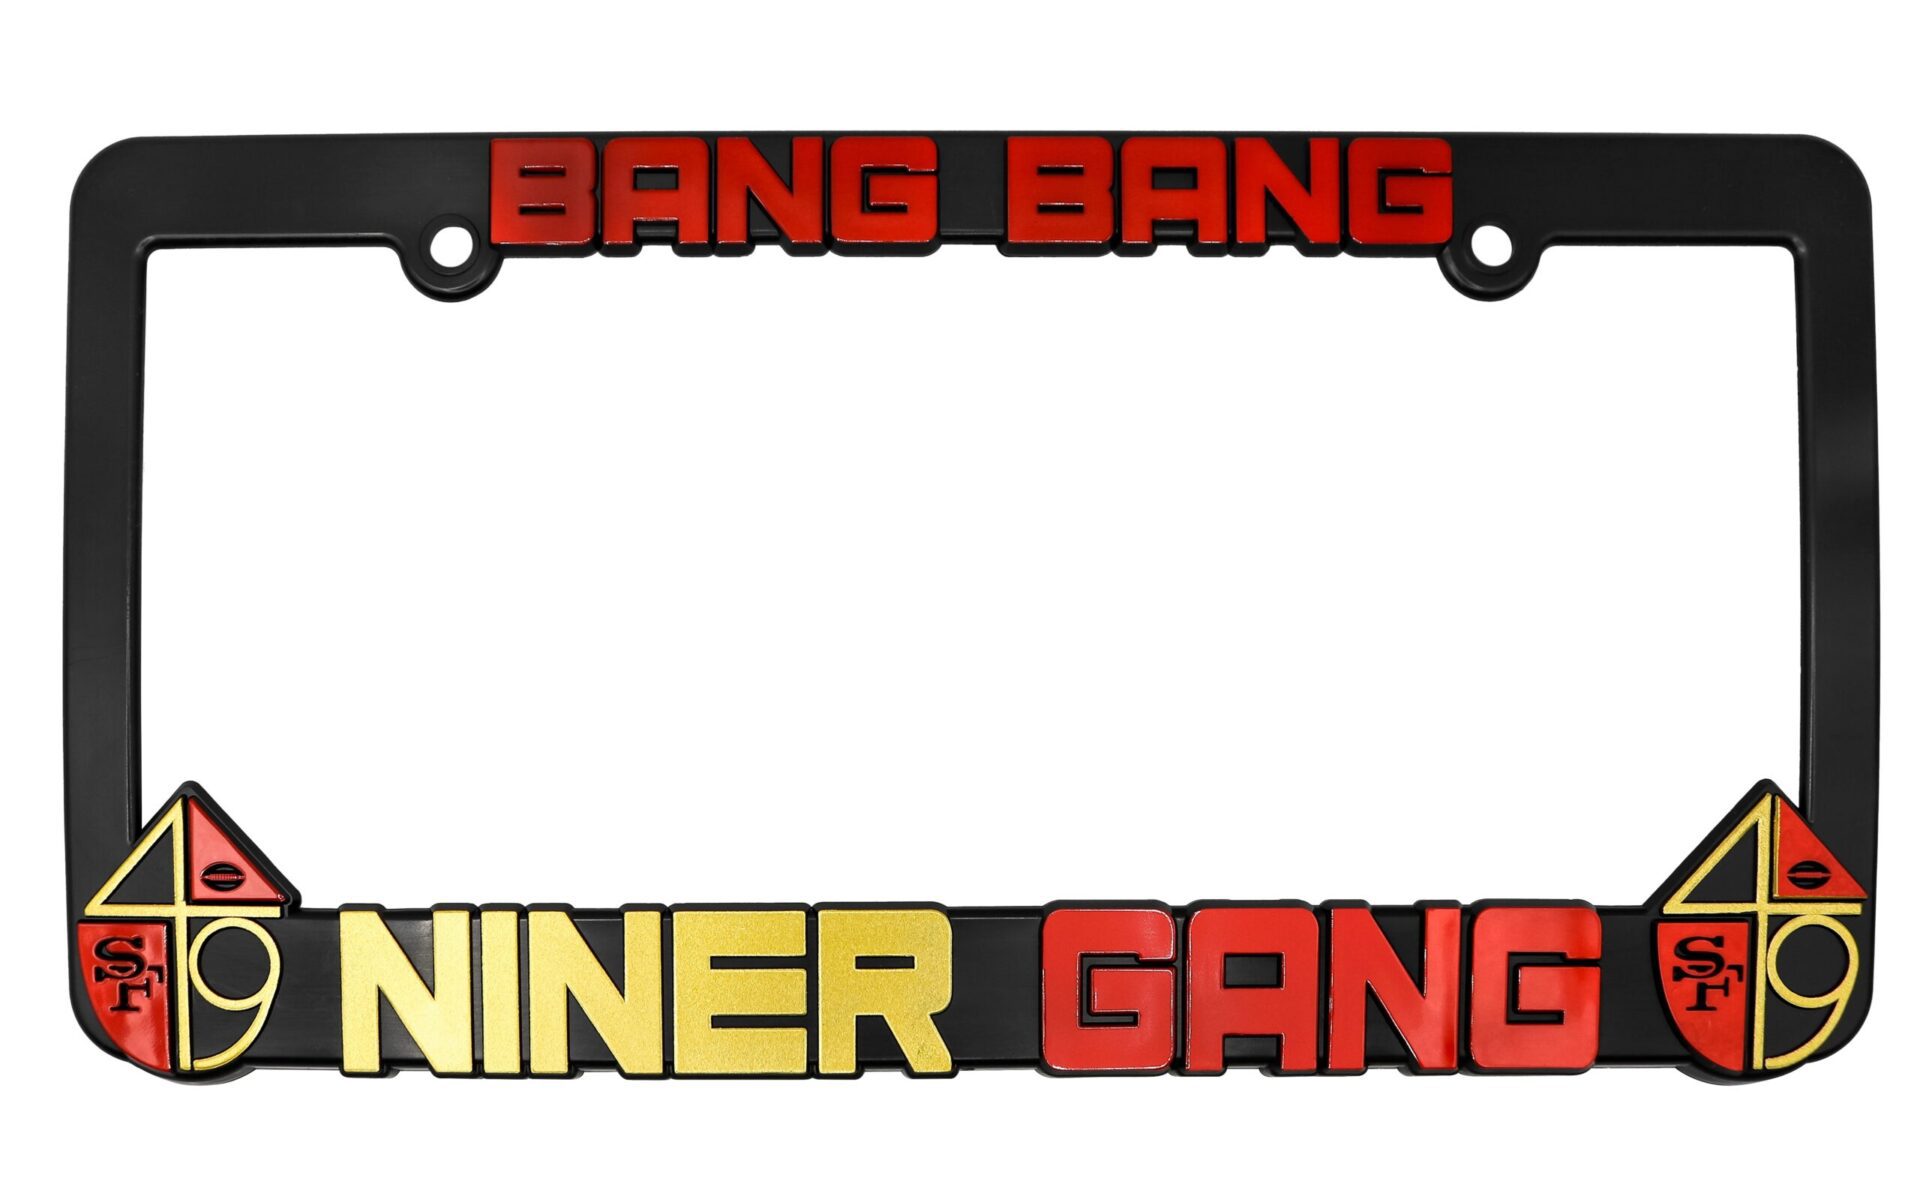 San Francisco 49ers “Bang Bang Niner Gang” License Plate Frame